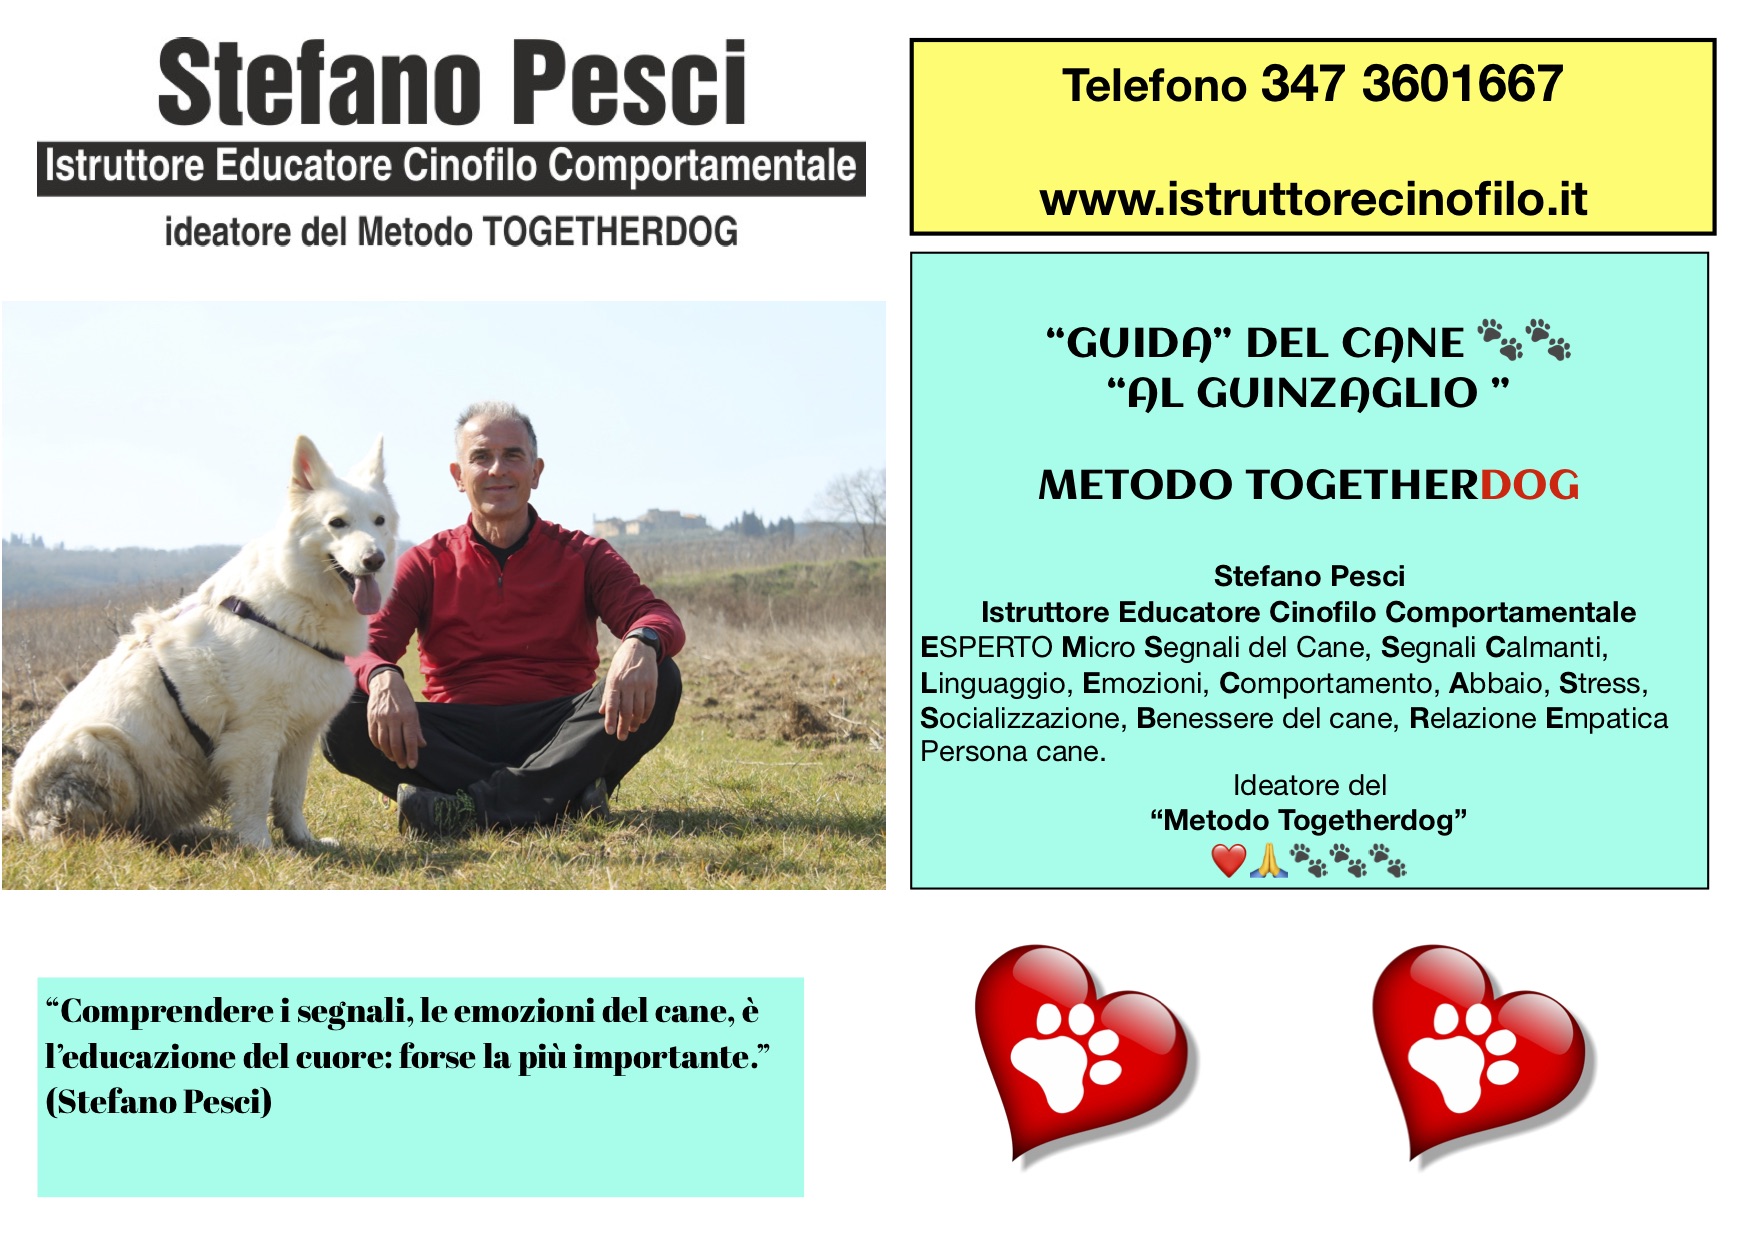 "Guida" del cane al guinzaglio Metodo Togetherdog - STEFANO PESCI ISTRUTTORE EDUCATORE CINOFILO COMPORTAMENTALE